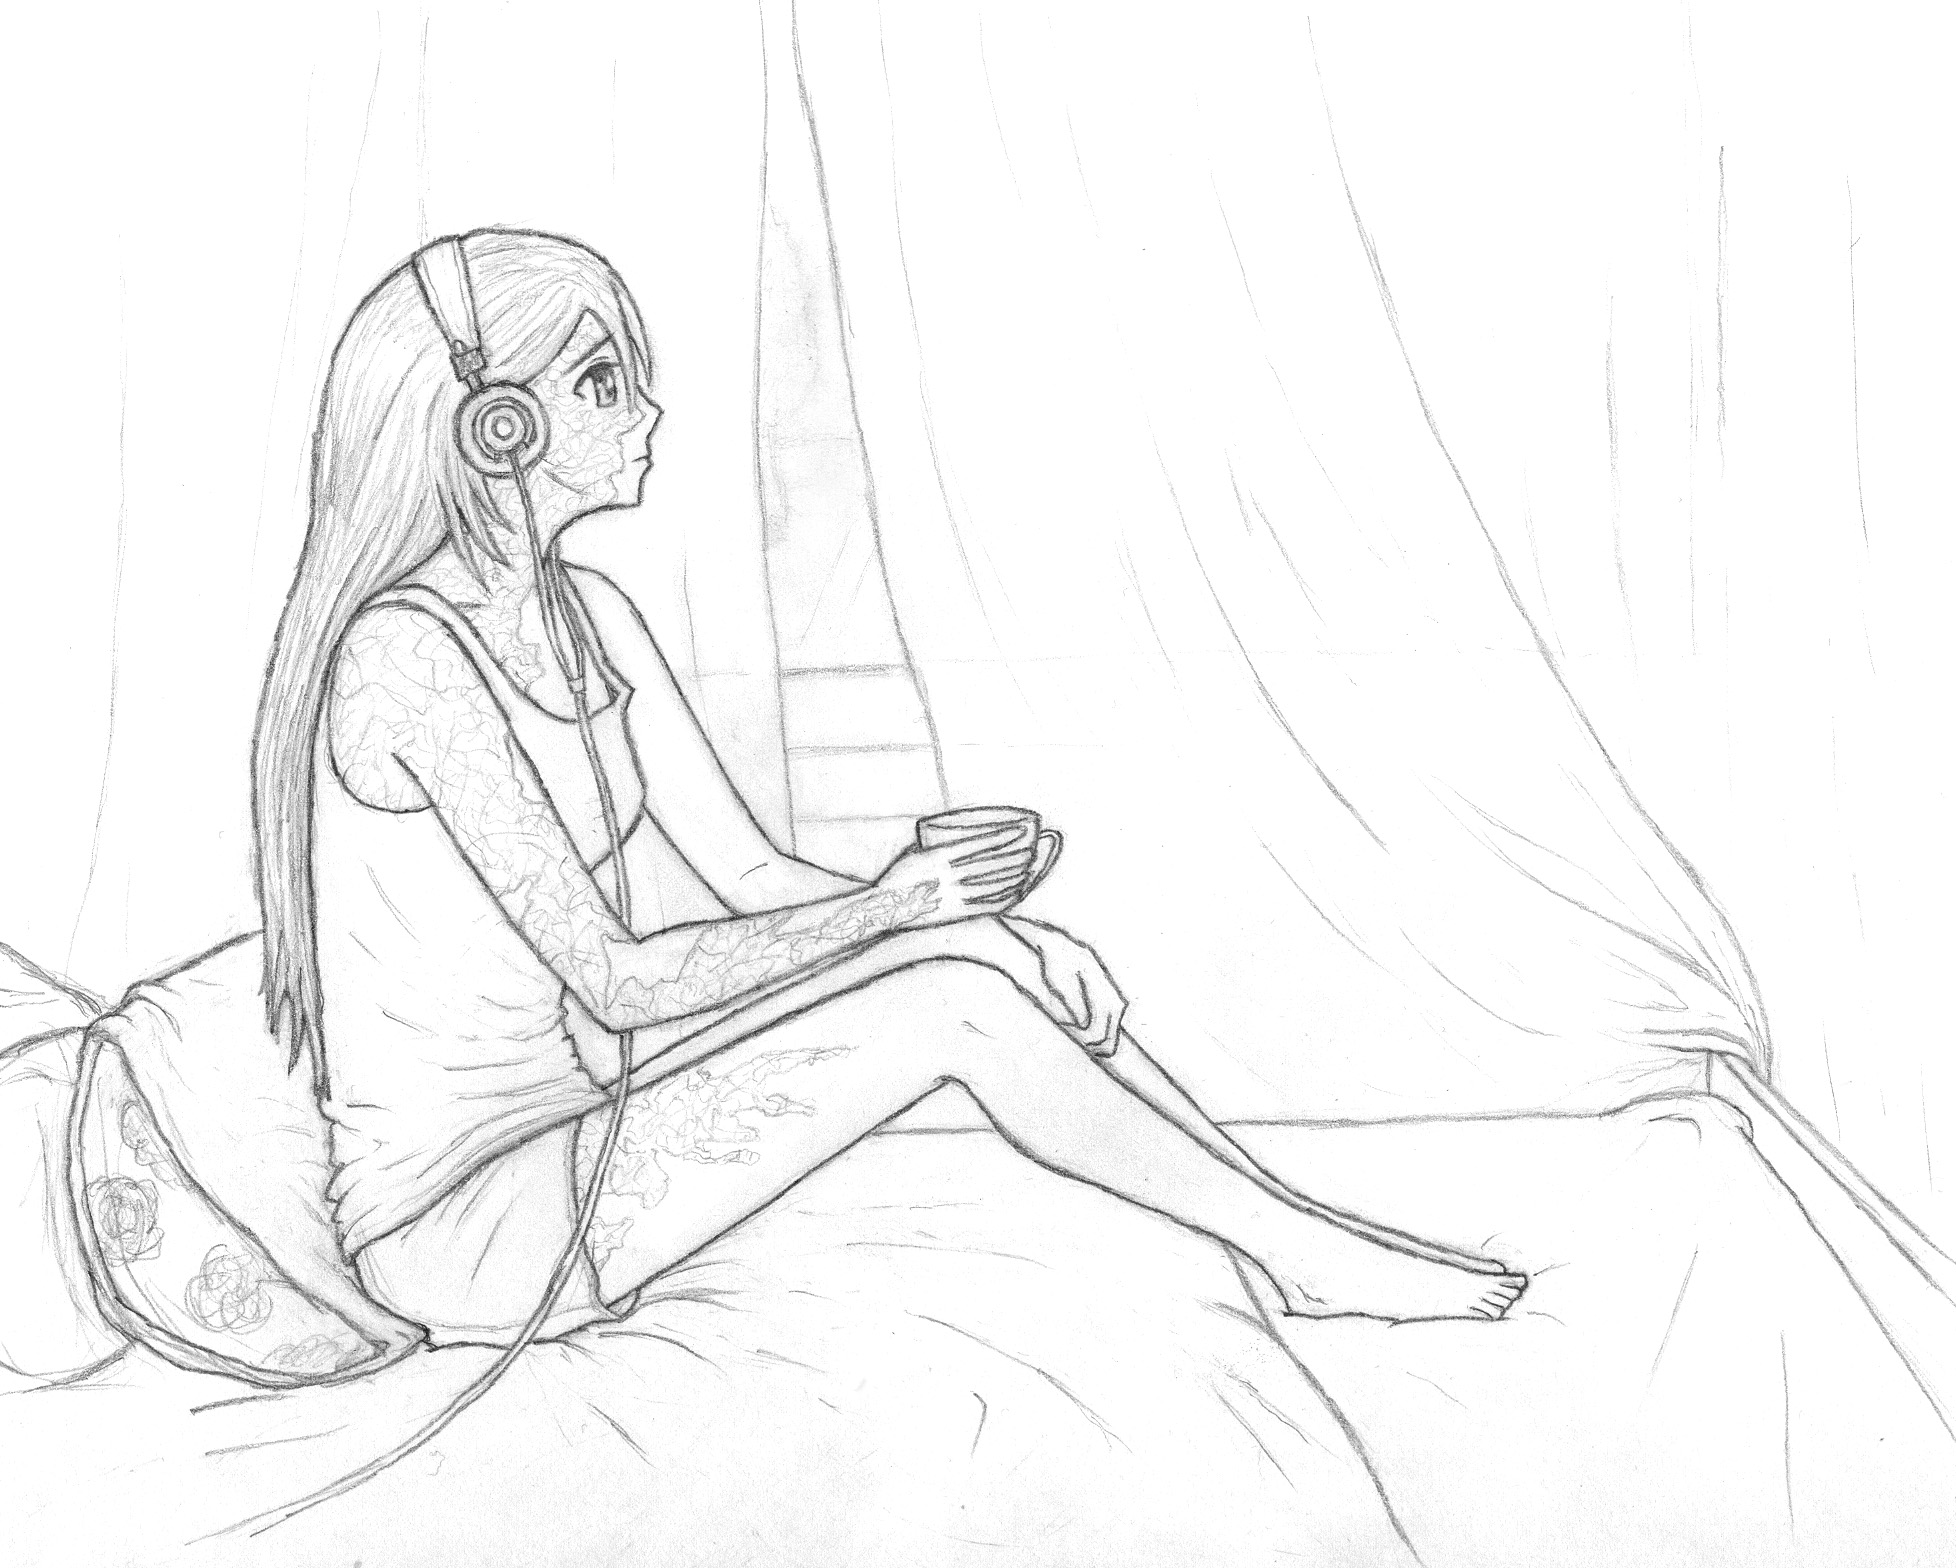 A certain melancholily reclining Hanako